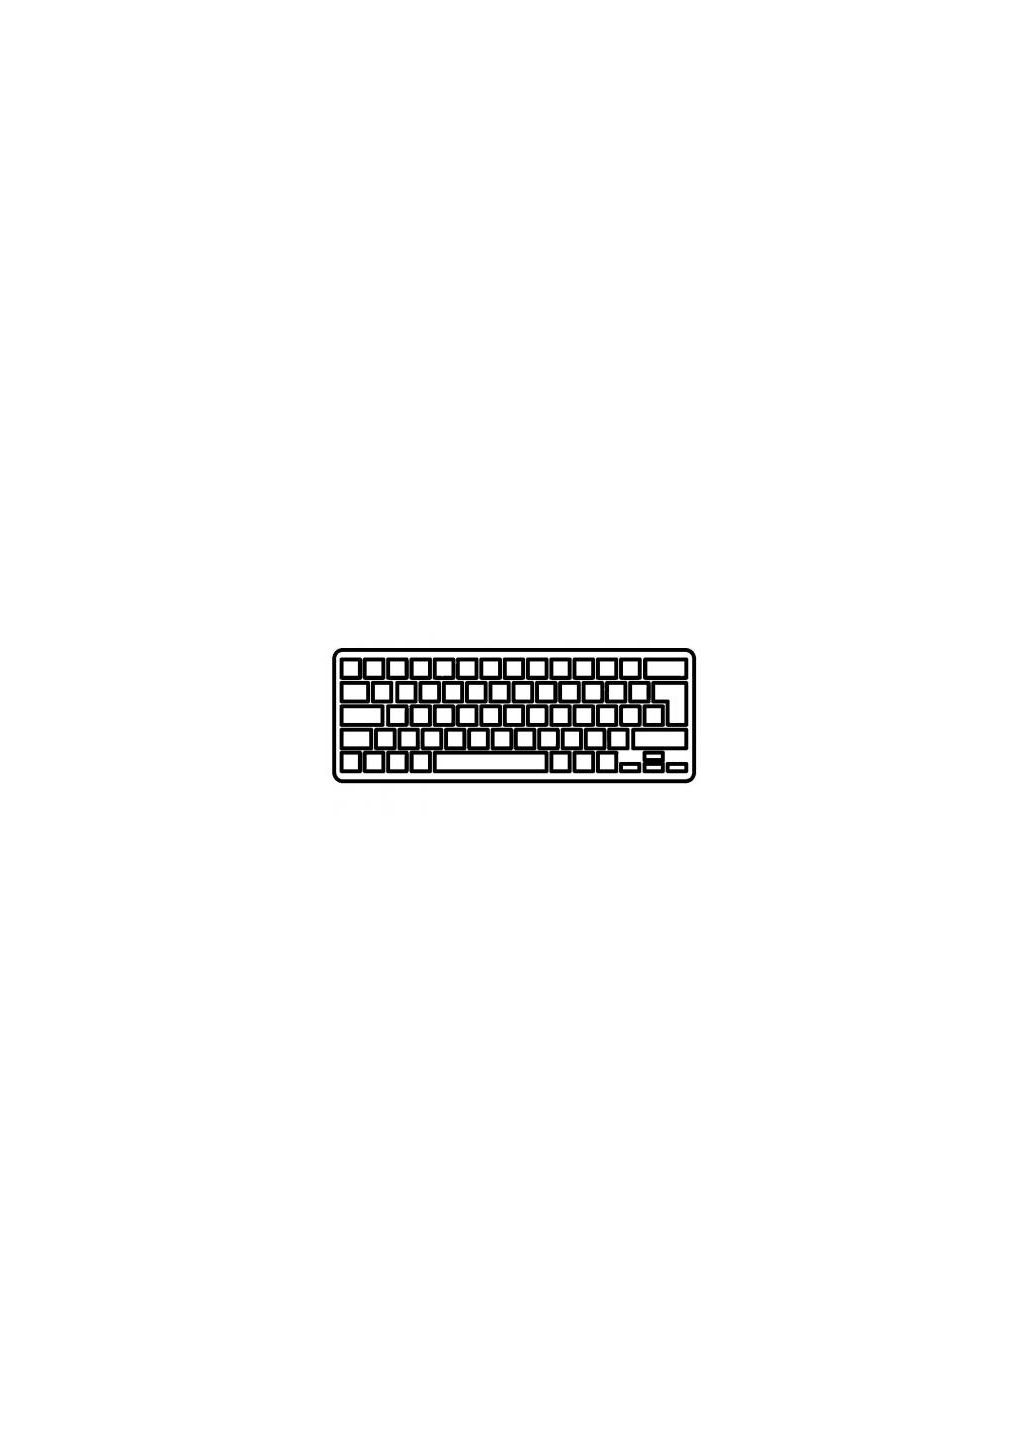 Клавиатура ноутбука Aspire V5471/V5-431/M5-481 черная без рамки подсветка UA (A43863) Acer aspire v5-471/v5-431/m5-481 черная без рамки подсв (276706611)